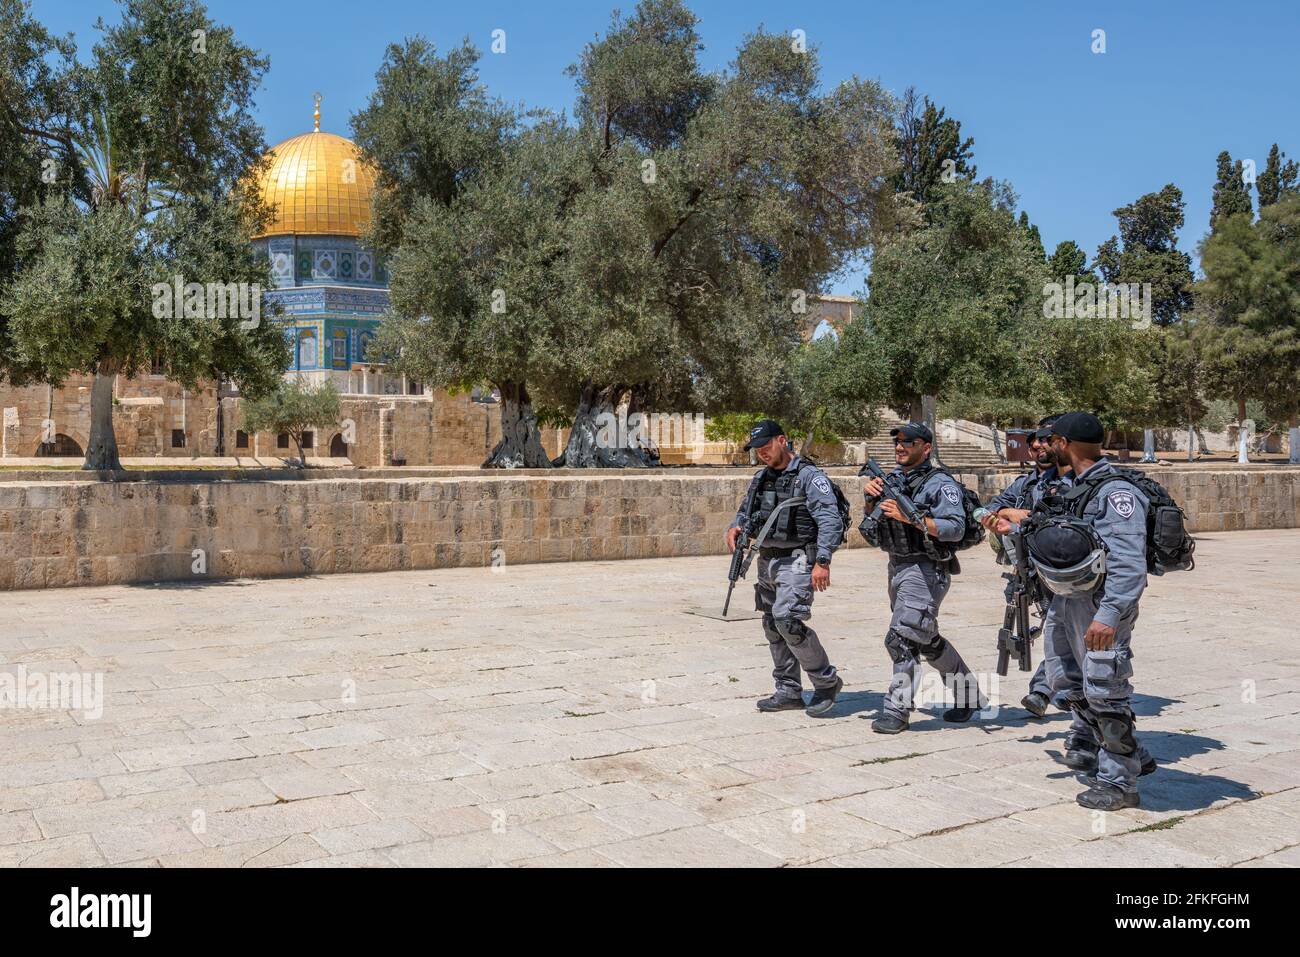 Jérusalem-est, Israël - 28 avril 2021 : les forces de sécurité israéliennes lourdement armées marchent près du dôme du rocher, Jérusalem, Israël. Banque D'Images